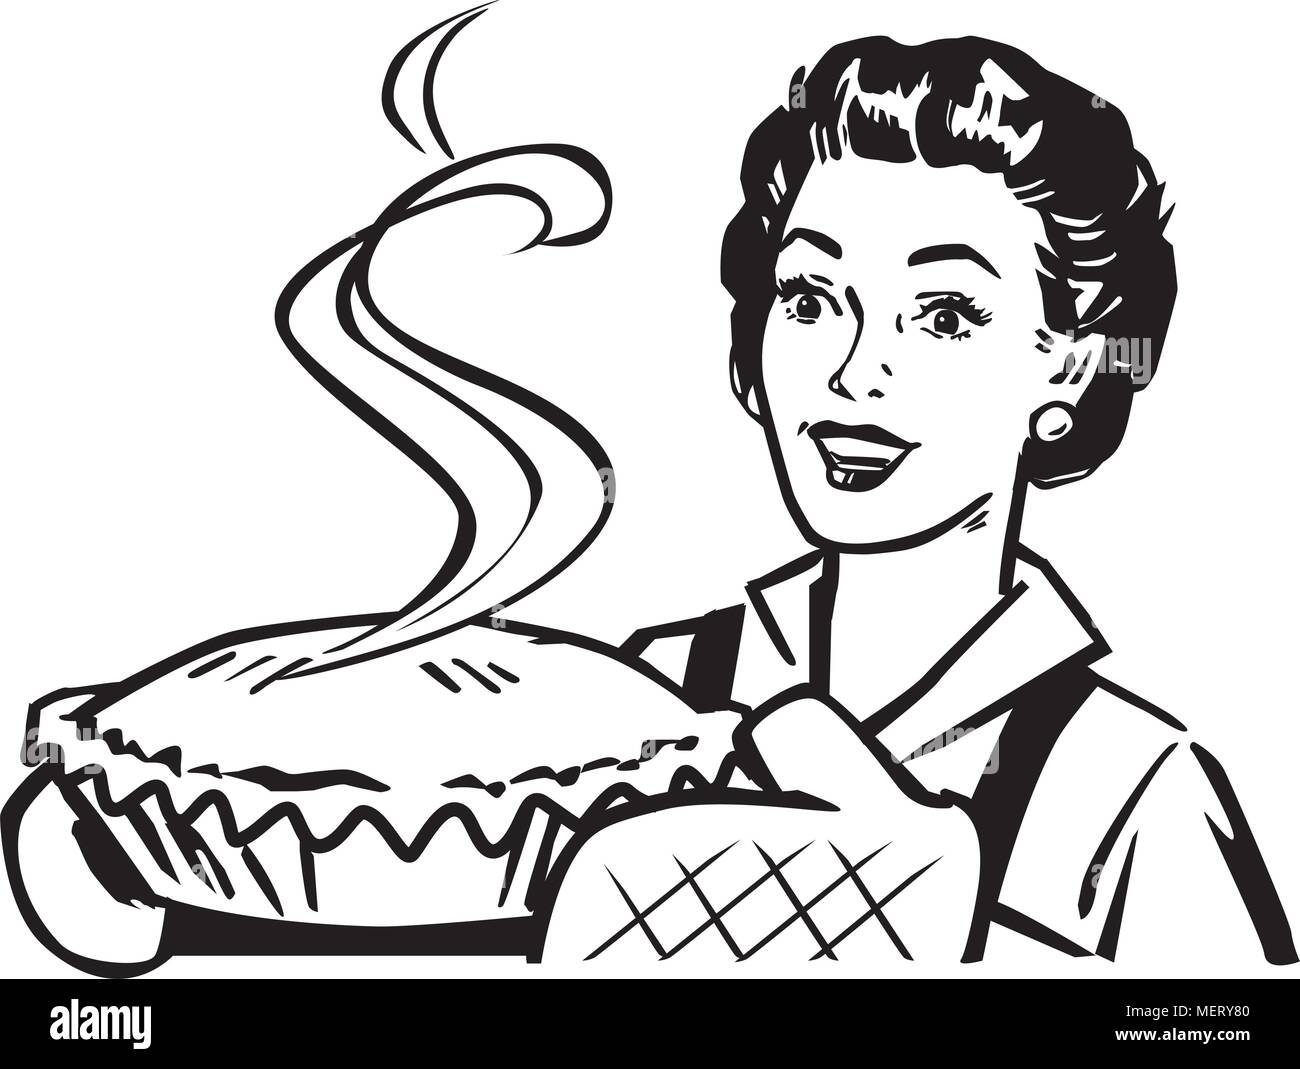 Fresh Baked Pie - Retro Clipart Illustration Stock Vector Image & Art ...